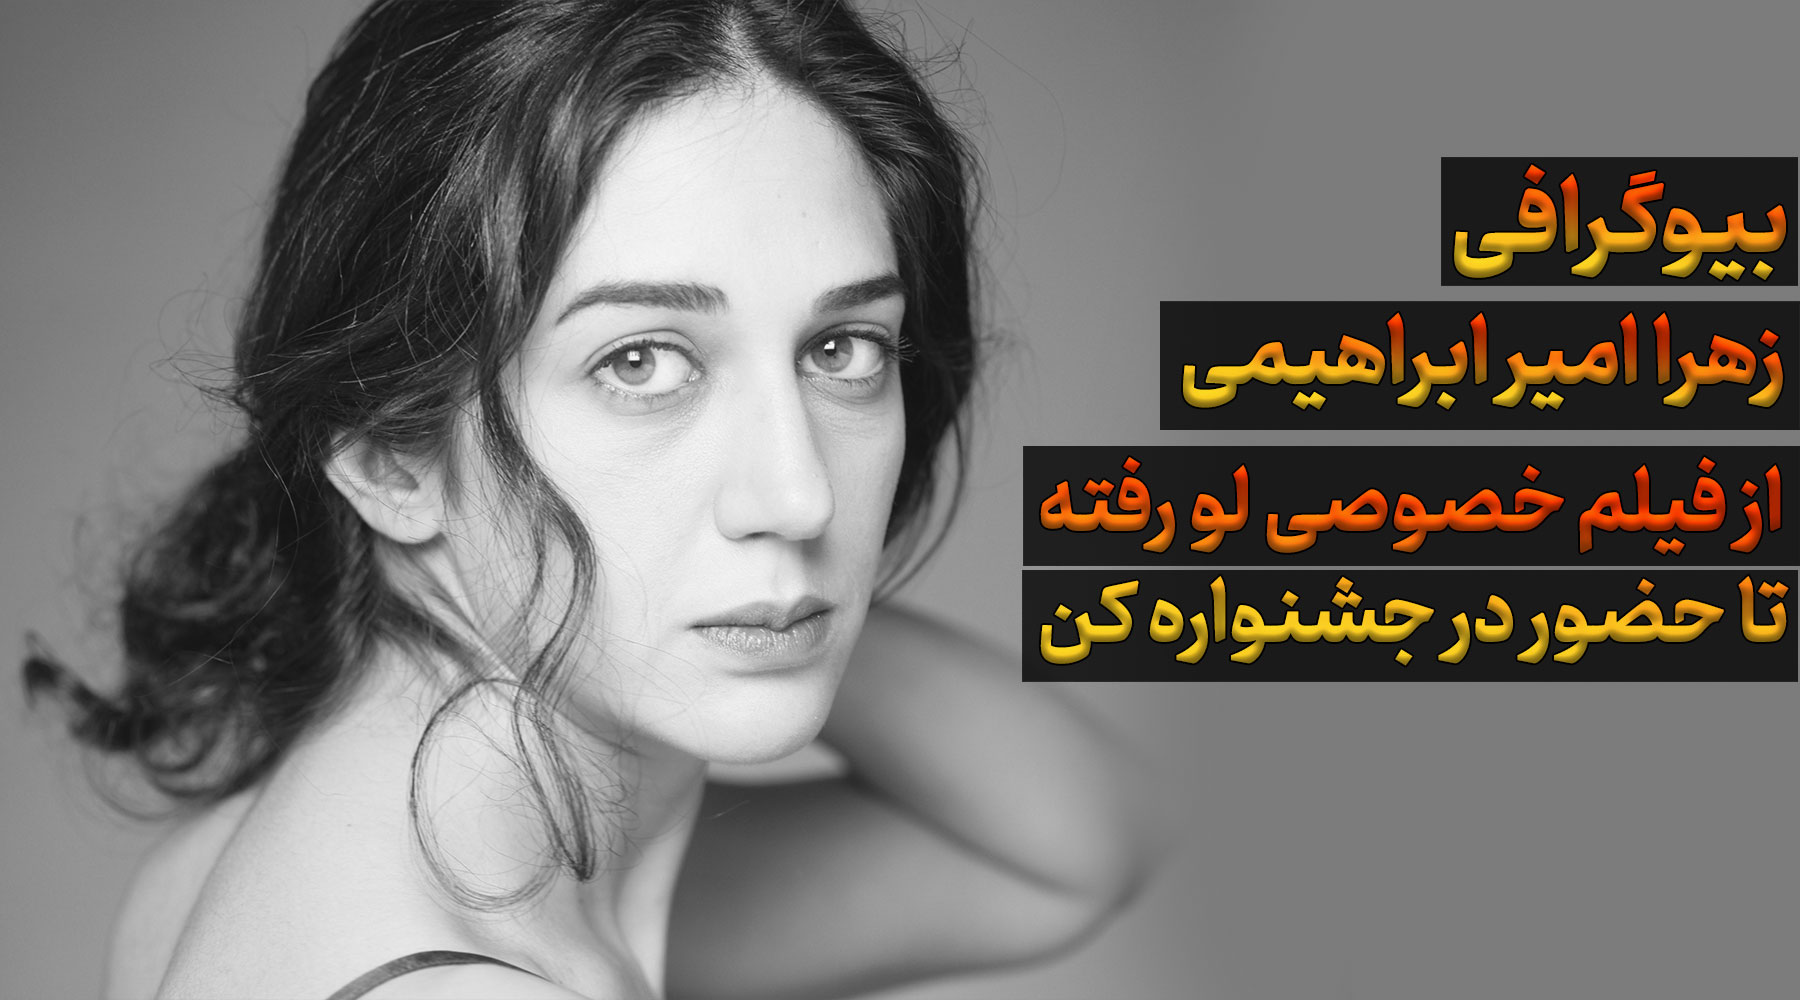 بیوگرافی زهرا امیر ابراهیمی بازیگر ایرانی، جشنواره کن و فیلم خصوصی لو رفت